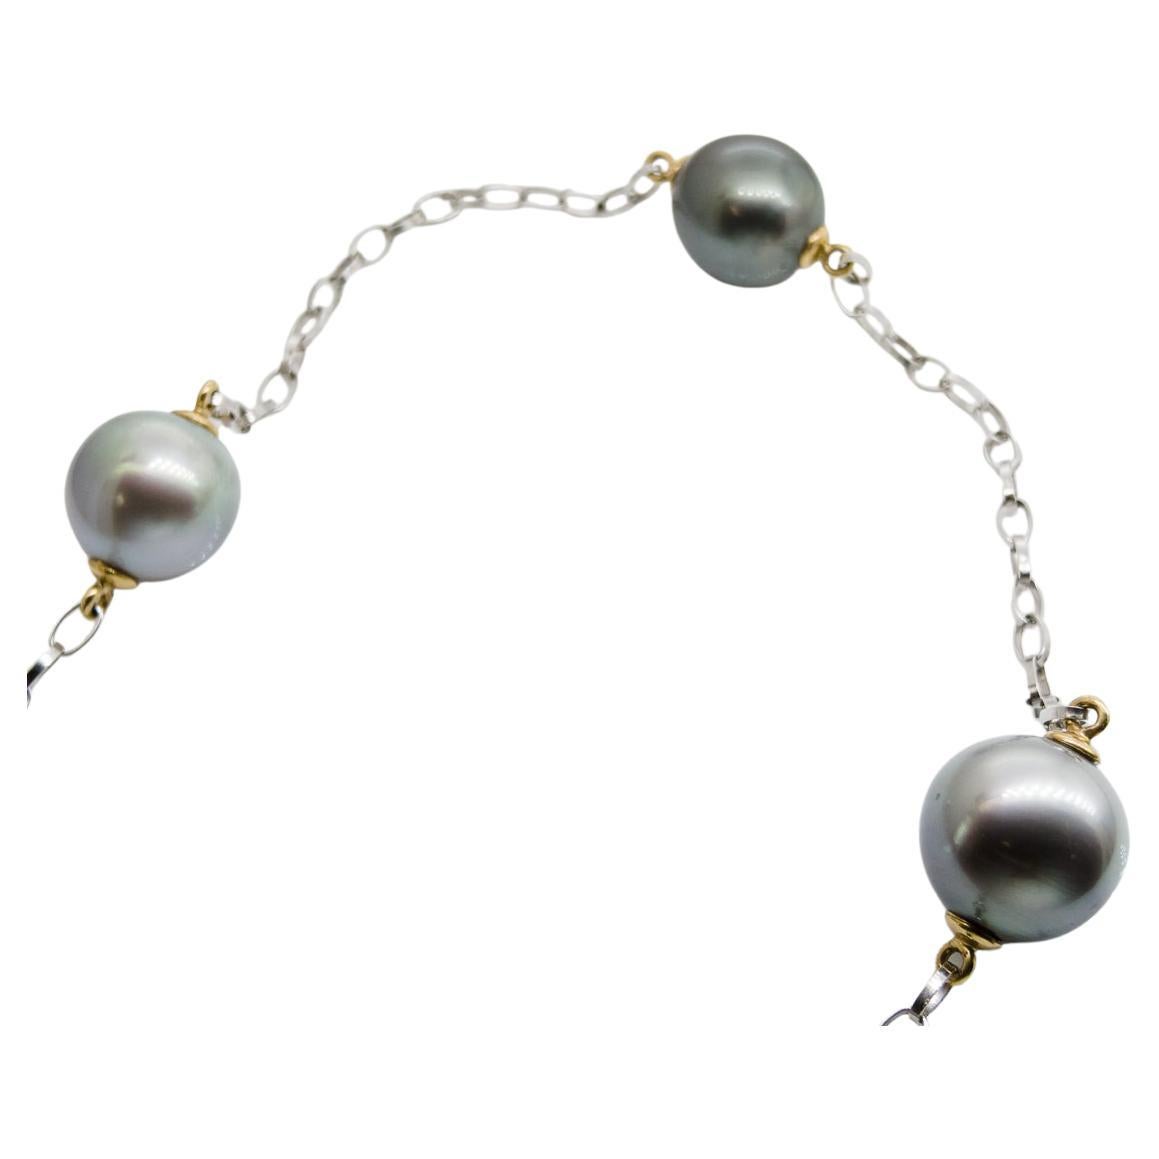 Long collier (61 cm=24 inch) avec 7 belles perles naturelles de Tahiti sur chaîne Belcher en or blanc 18 carats.
Les perles, coiffées d'or jaune 18 carats, ont un diamètre de 12 à 13 mm et sont de couleur grise à verte.
Le poids du collier est de